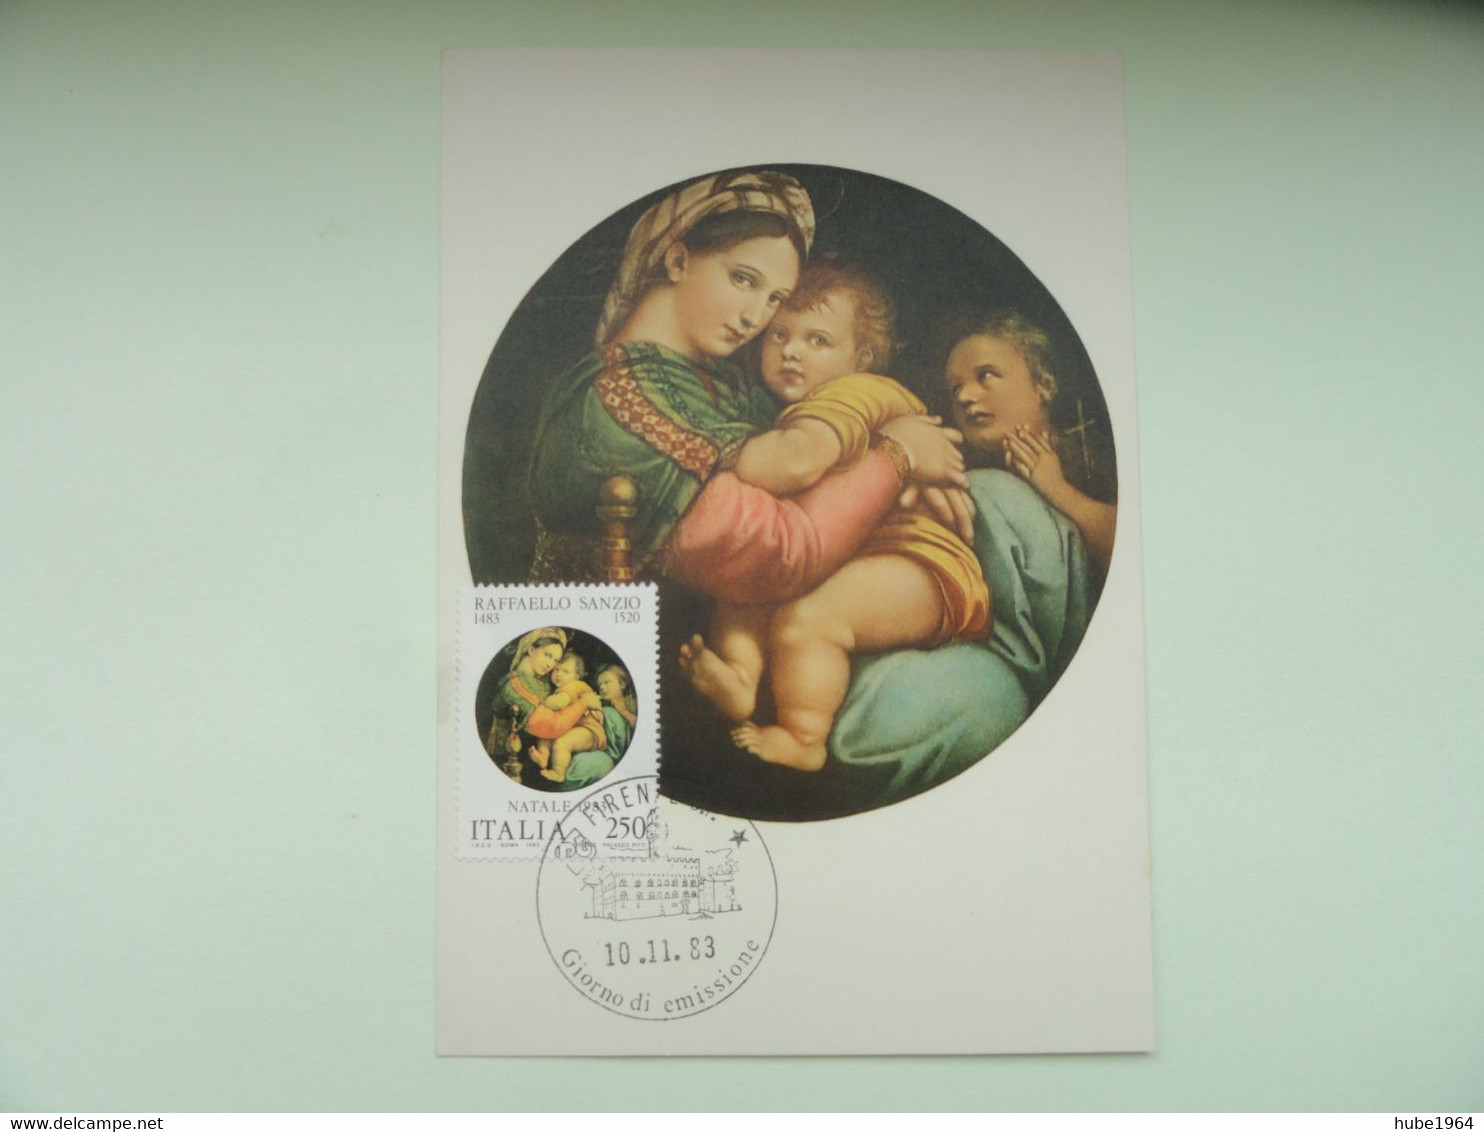 CARTE MAXIMUM CARD LA MADONE A LA CHAISE BY RAFFAELLO SANZIO ITALIE - Religious